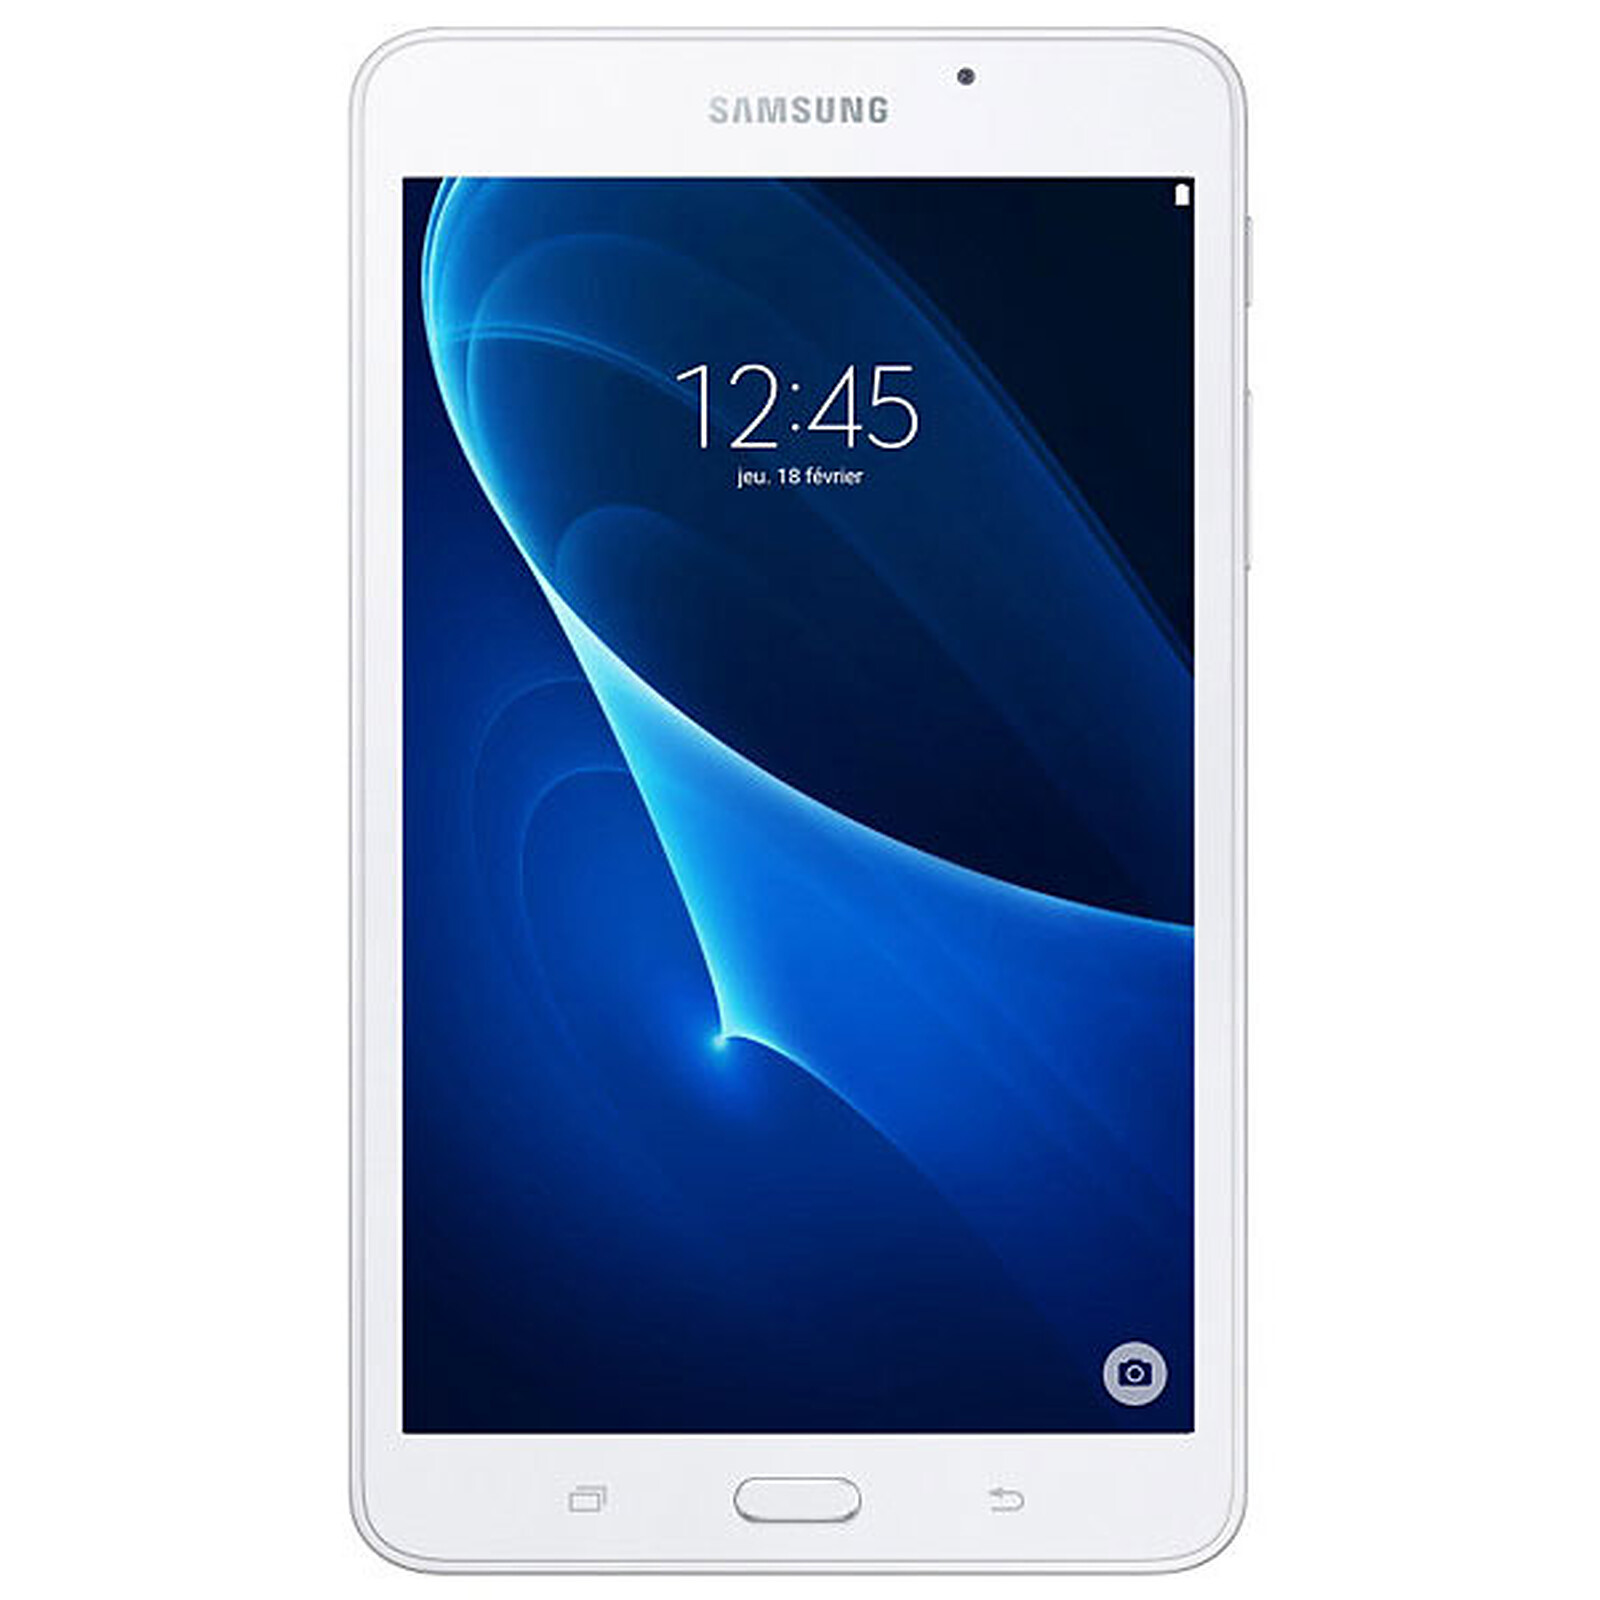 Nuevo Galaxy Tab A 10.5, características, precio y ficha técnica